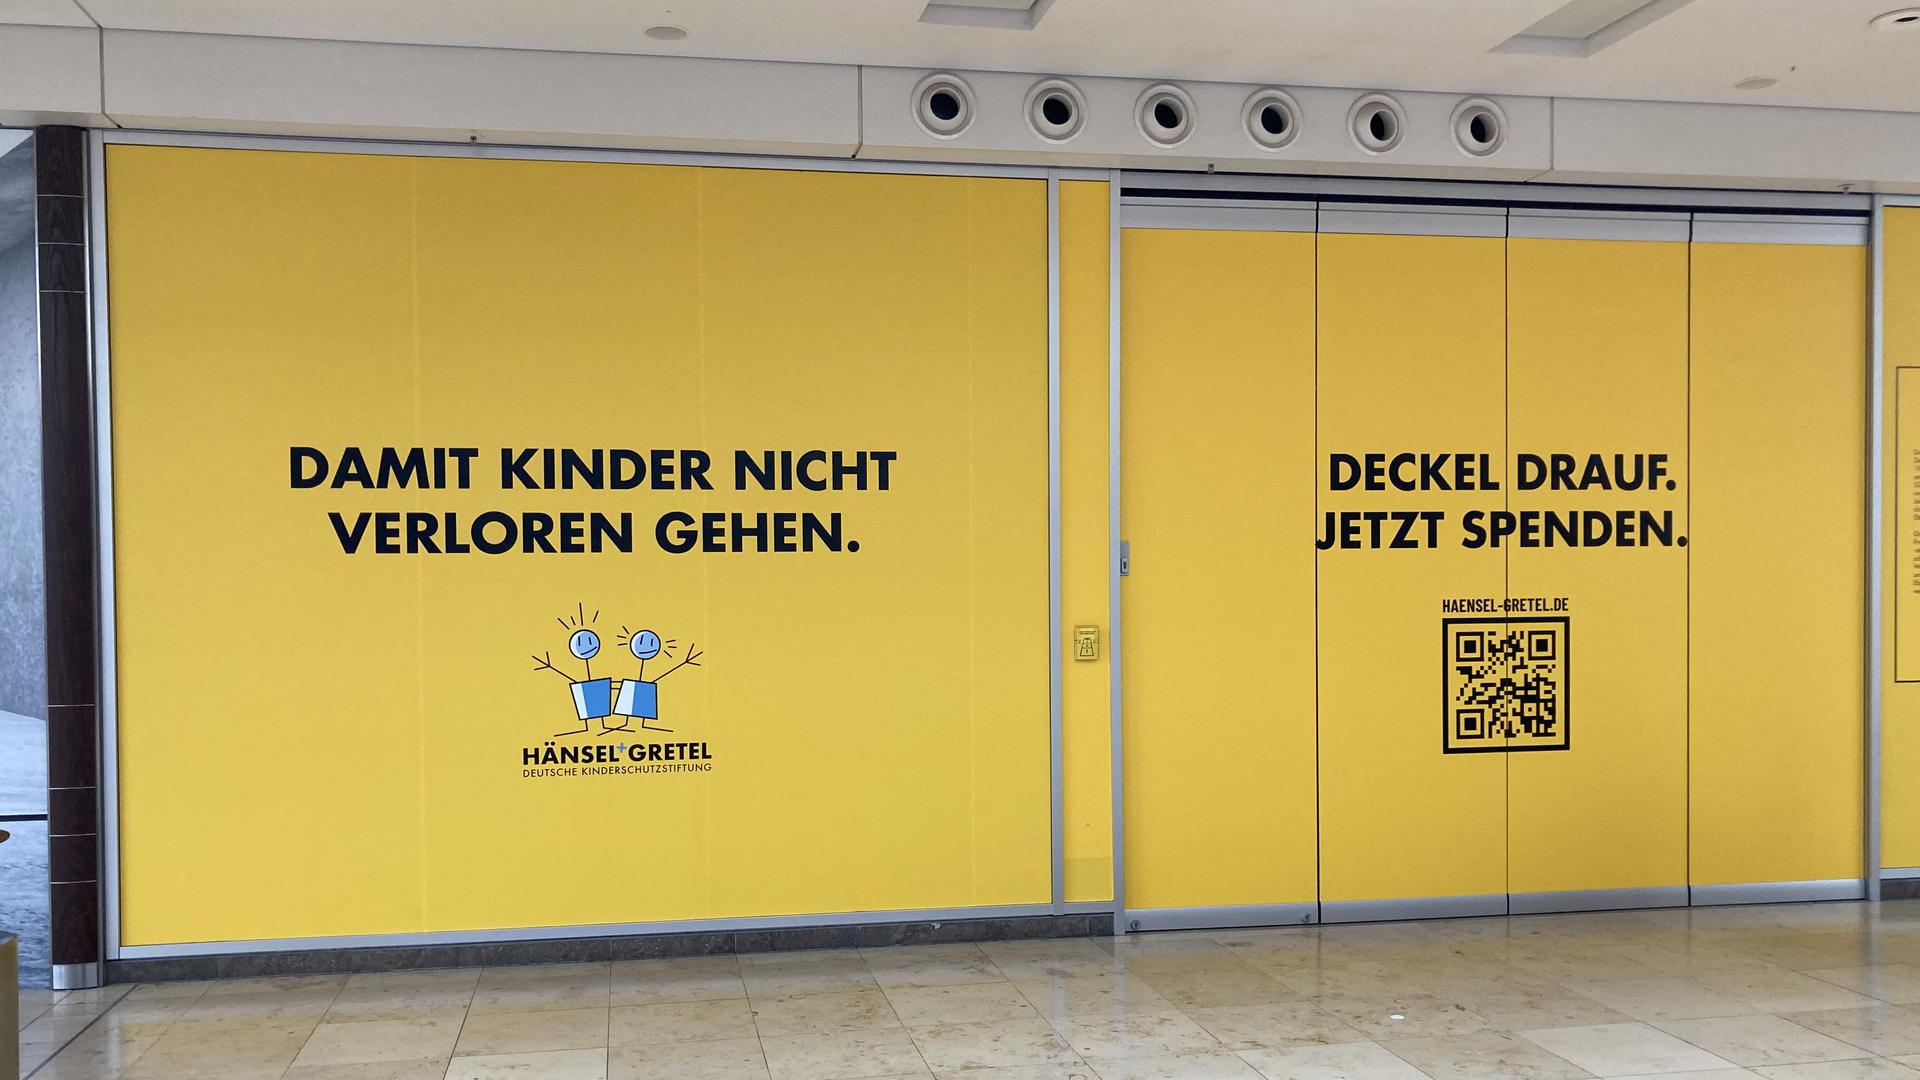 Das Ettlinger Tor Center in Karlsruhe räumt dem Spendenaufruf für den Kinderschutz auf der Schaufensterfläche eines aktuell leeren Ladens viel Platz ein.